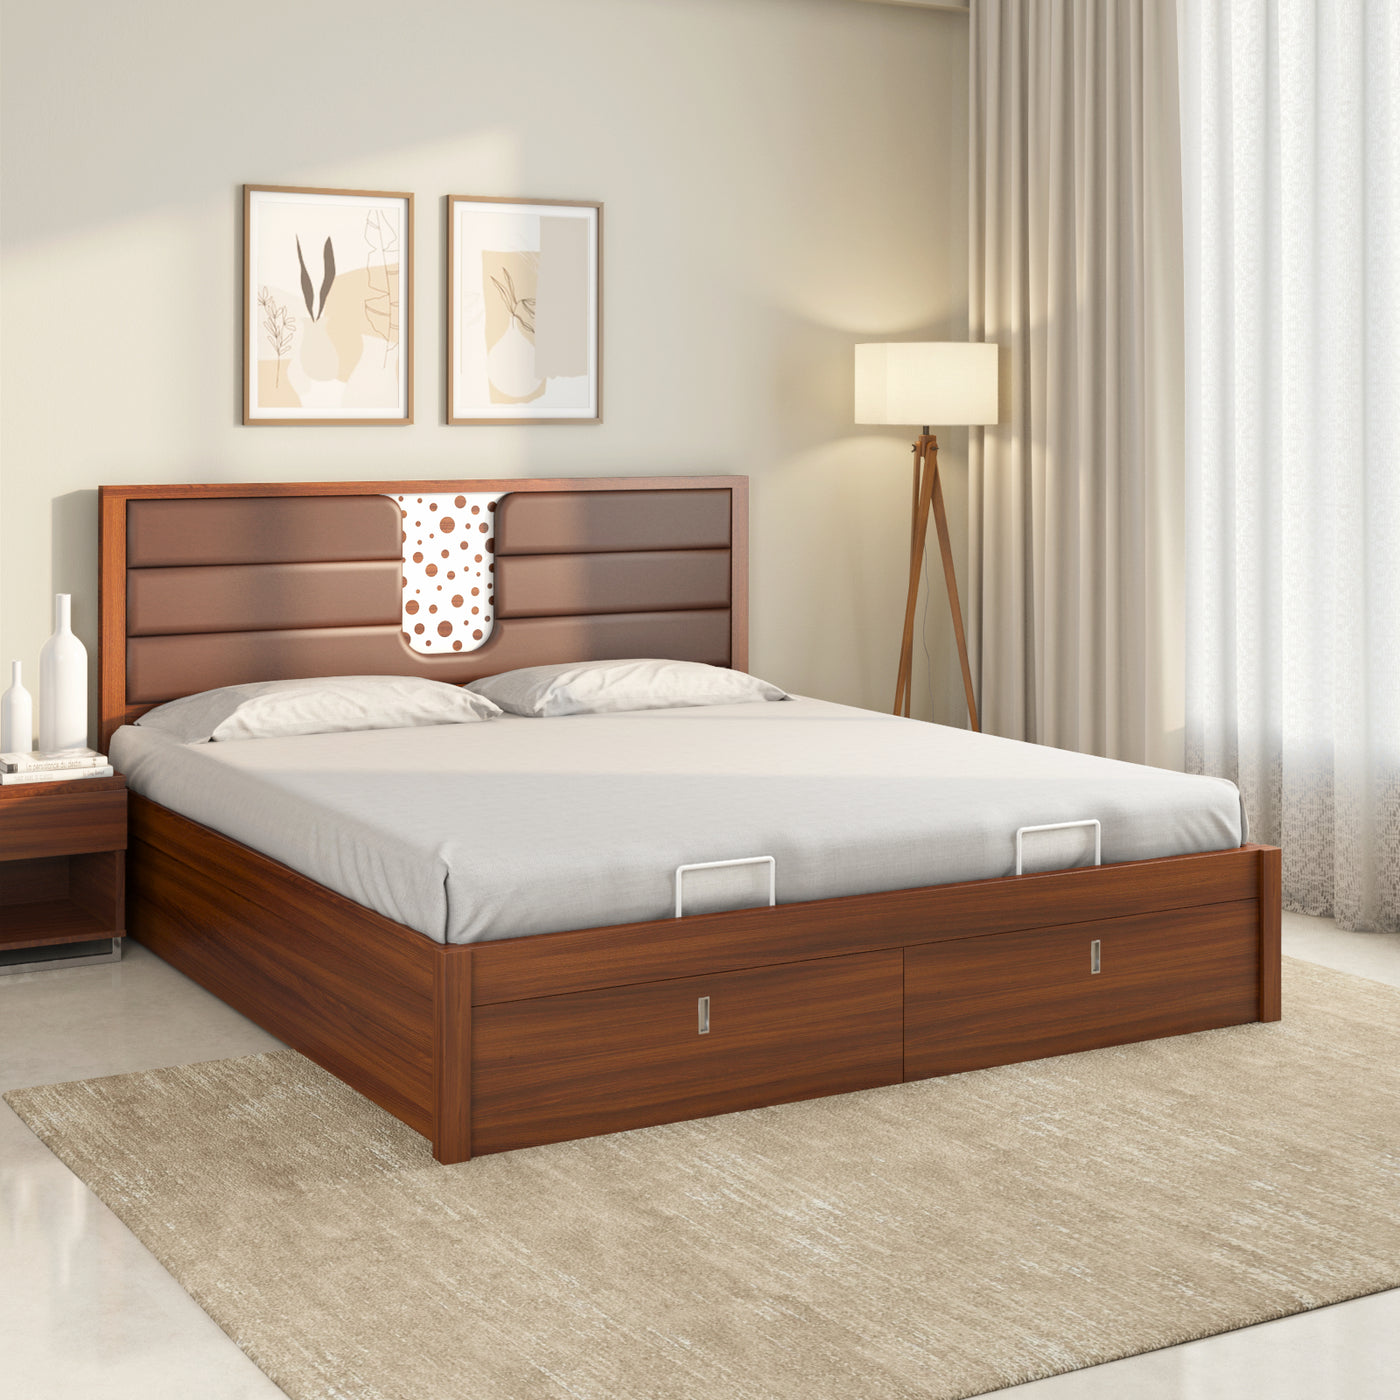 Nilkamal Noir Premier Bed With Full Hydraulic Storage (Walnut)